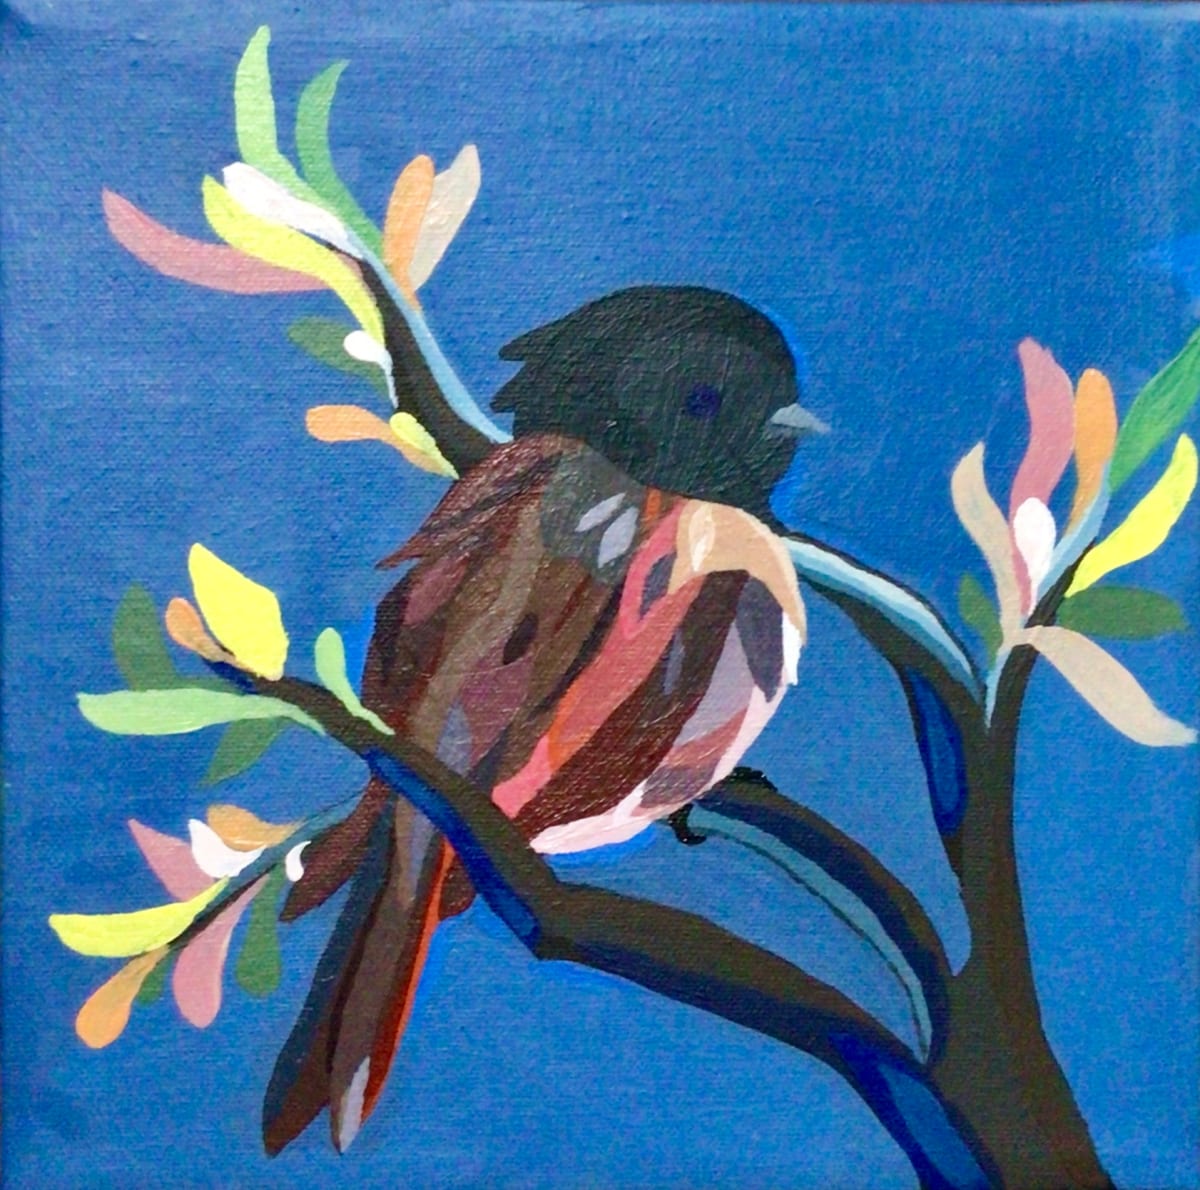 The Bird by Sheena Ashun 